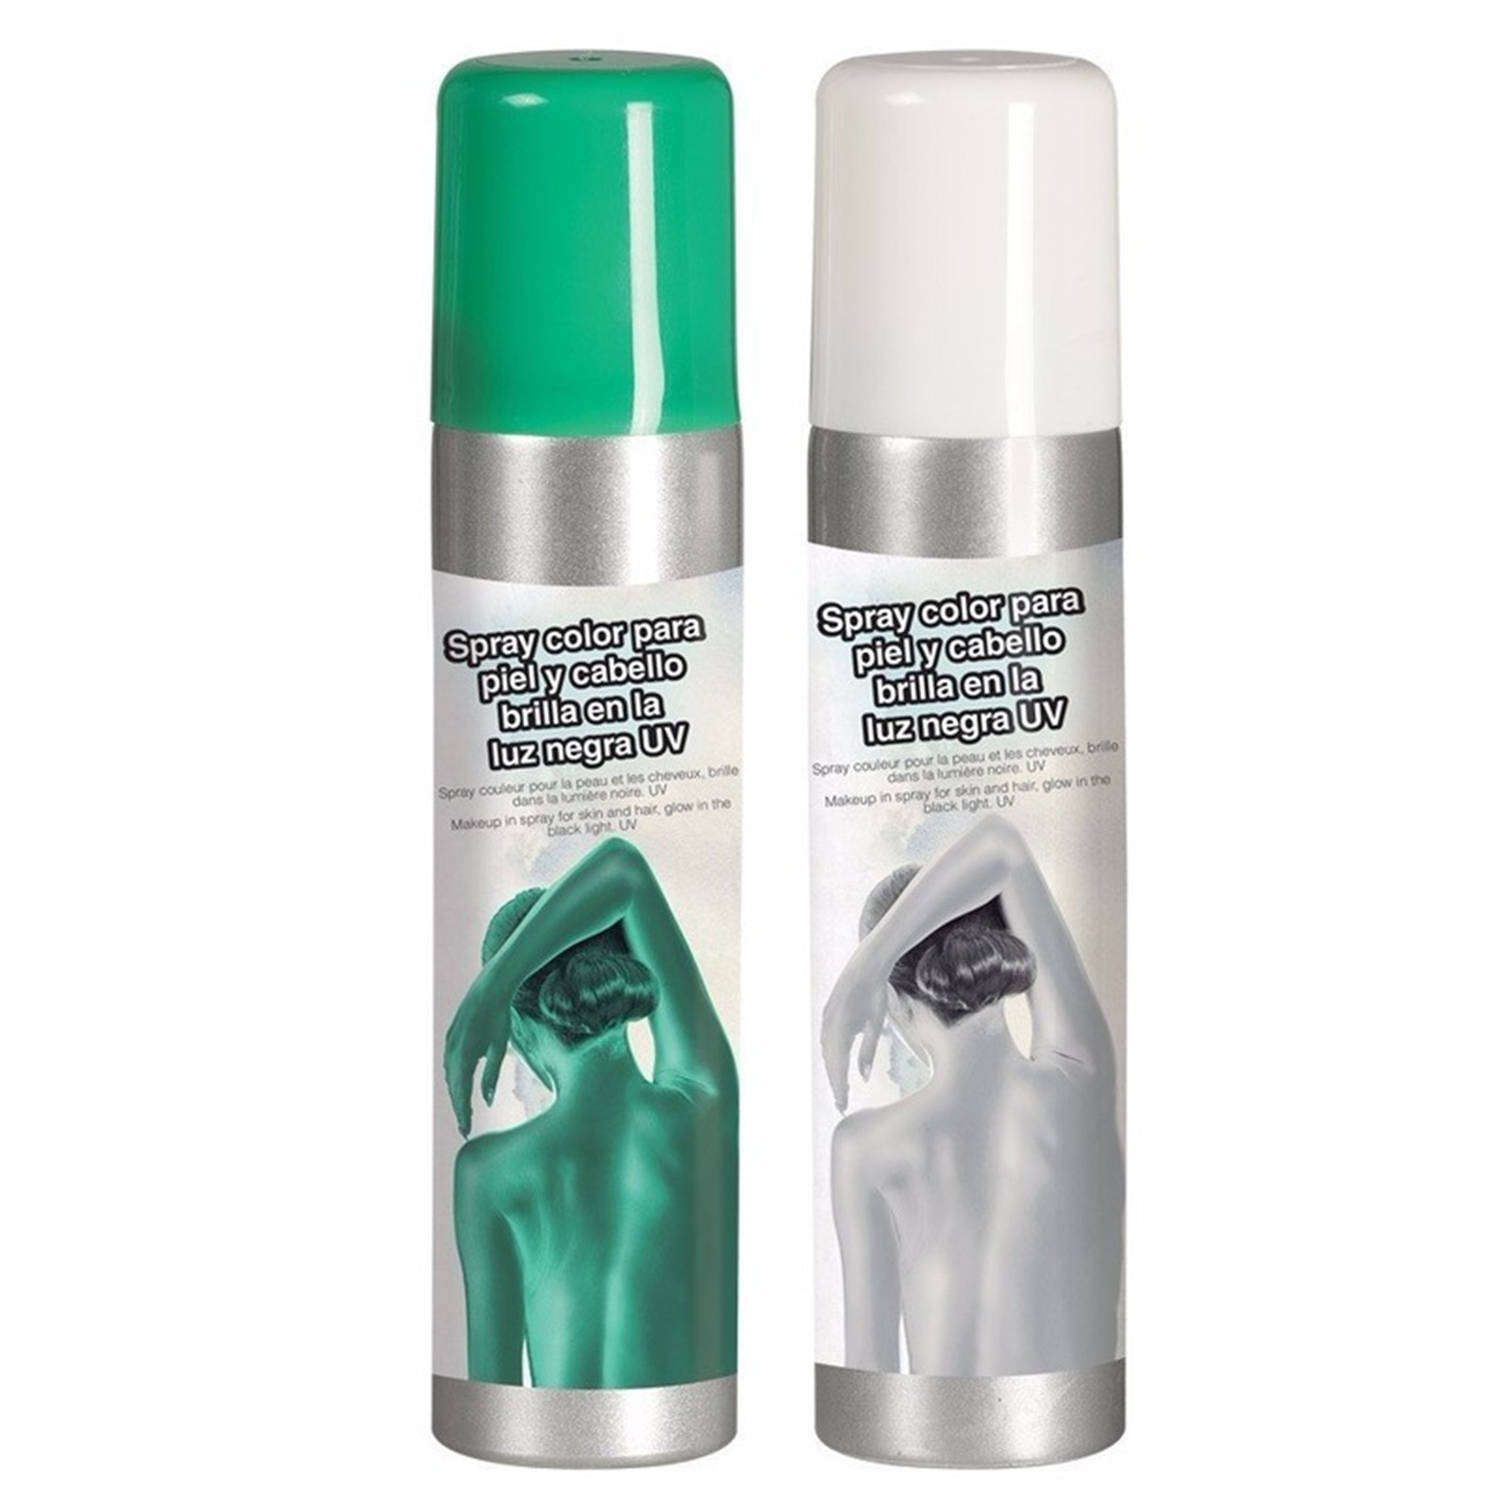 Guirca Haarspray-bodypaint spray 2x kleuren wit en groen 75 ml Verkleedhaarkleuring